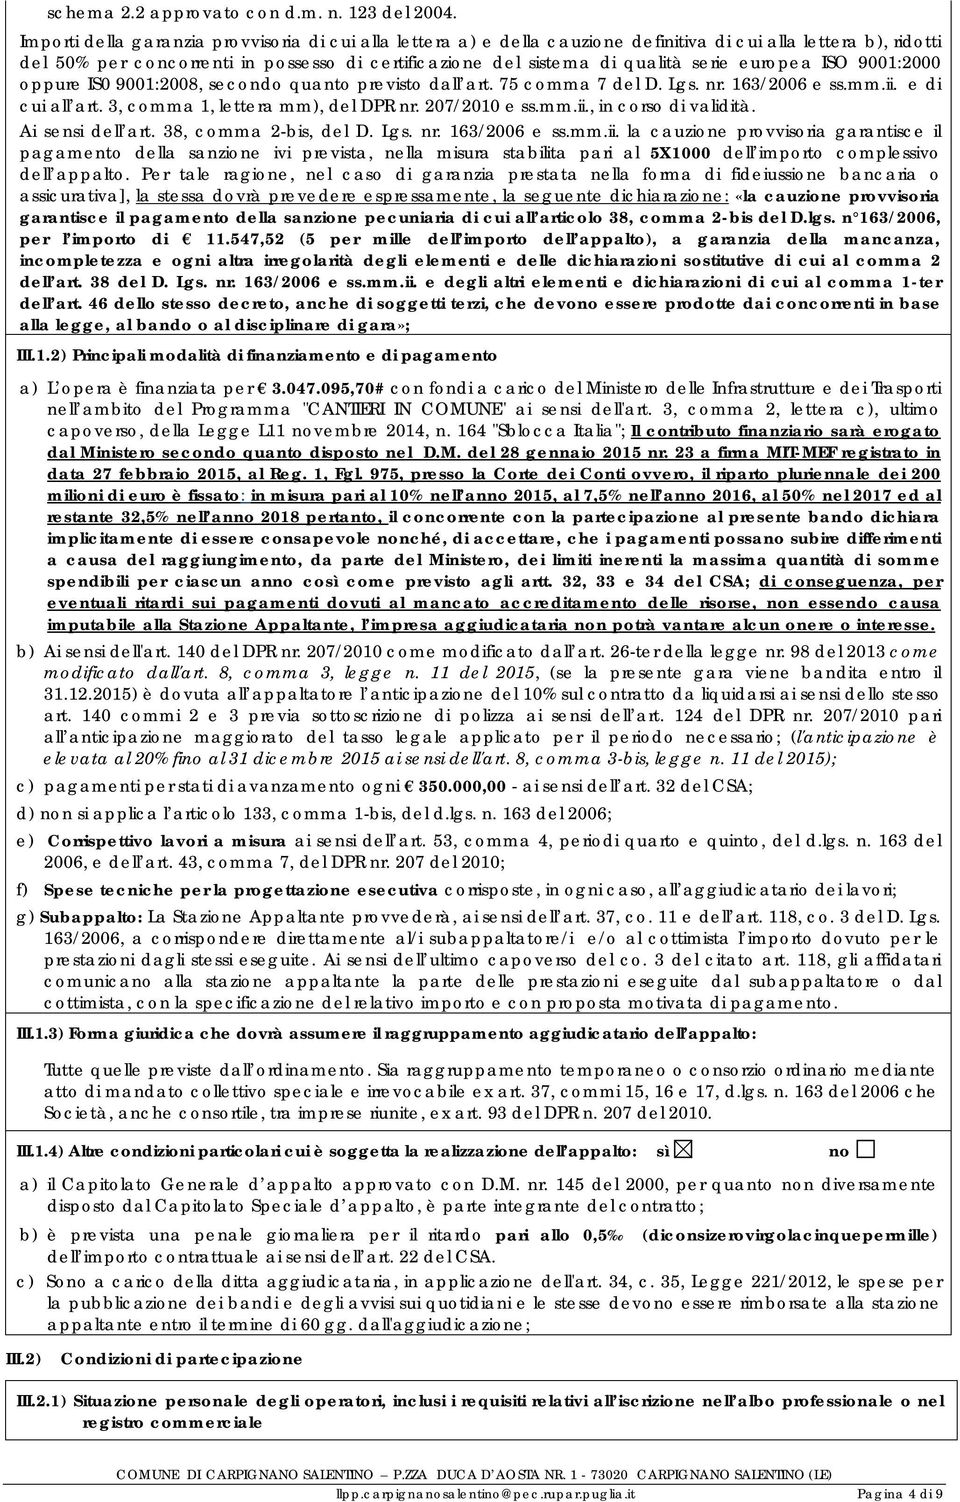 serie europea ISO 9001:2000 oppure IS0 9001:2008, secondo quanto previsto dall art. 75 comma 7 del D. Lgs. nr. 163/2006 e ss.mm.ii. e di cui all art. 3, comma 1, lettera mm), del DPR nr.